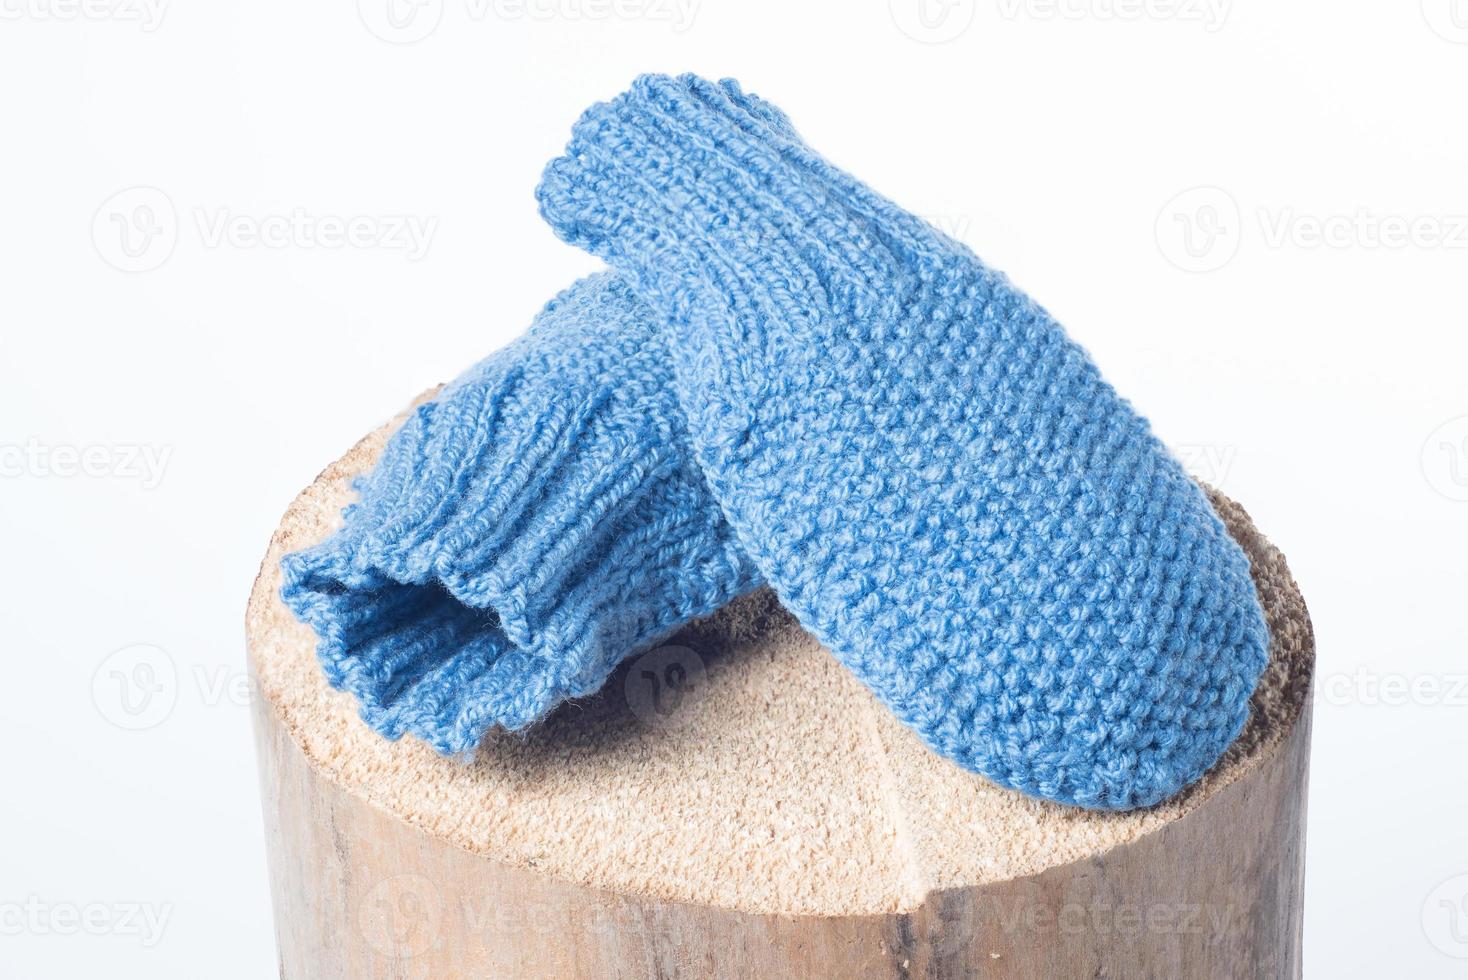 Winter gestrickte Wollkleidung Handschuhe isoliert auf weißem Hintergrund foto